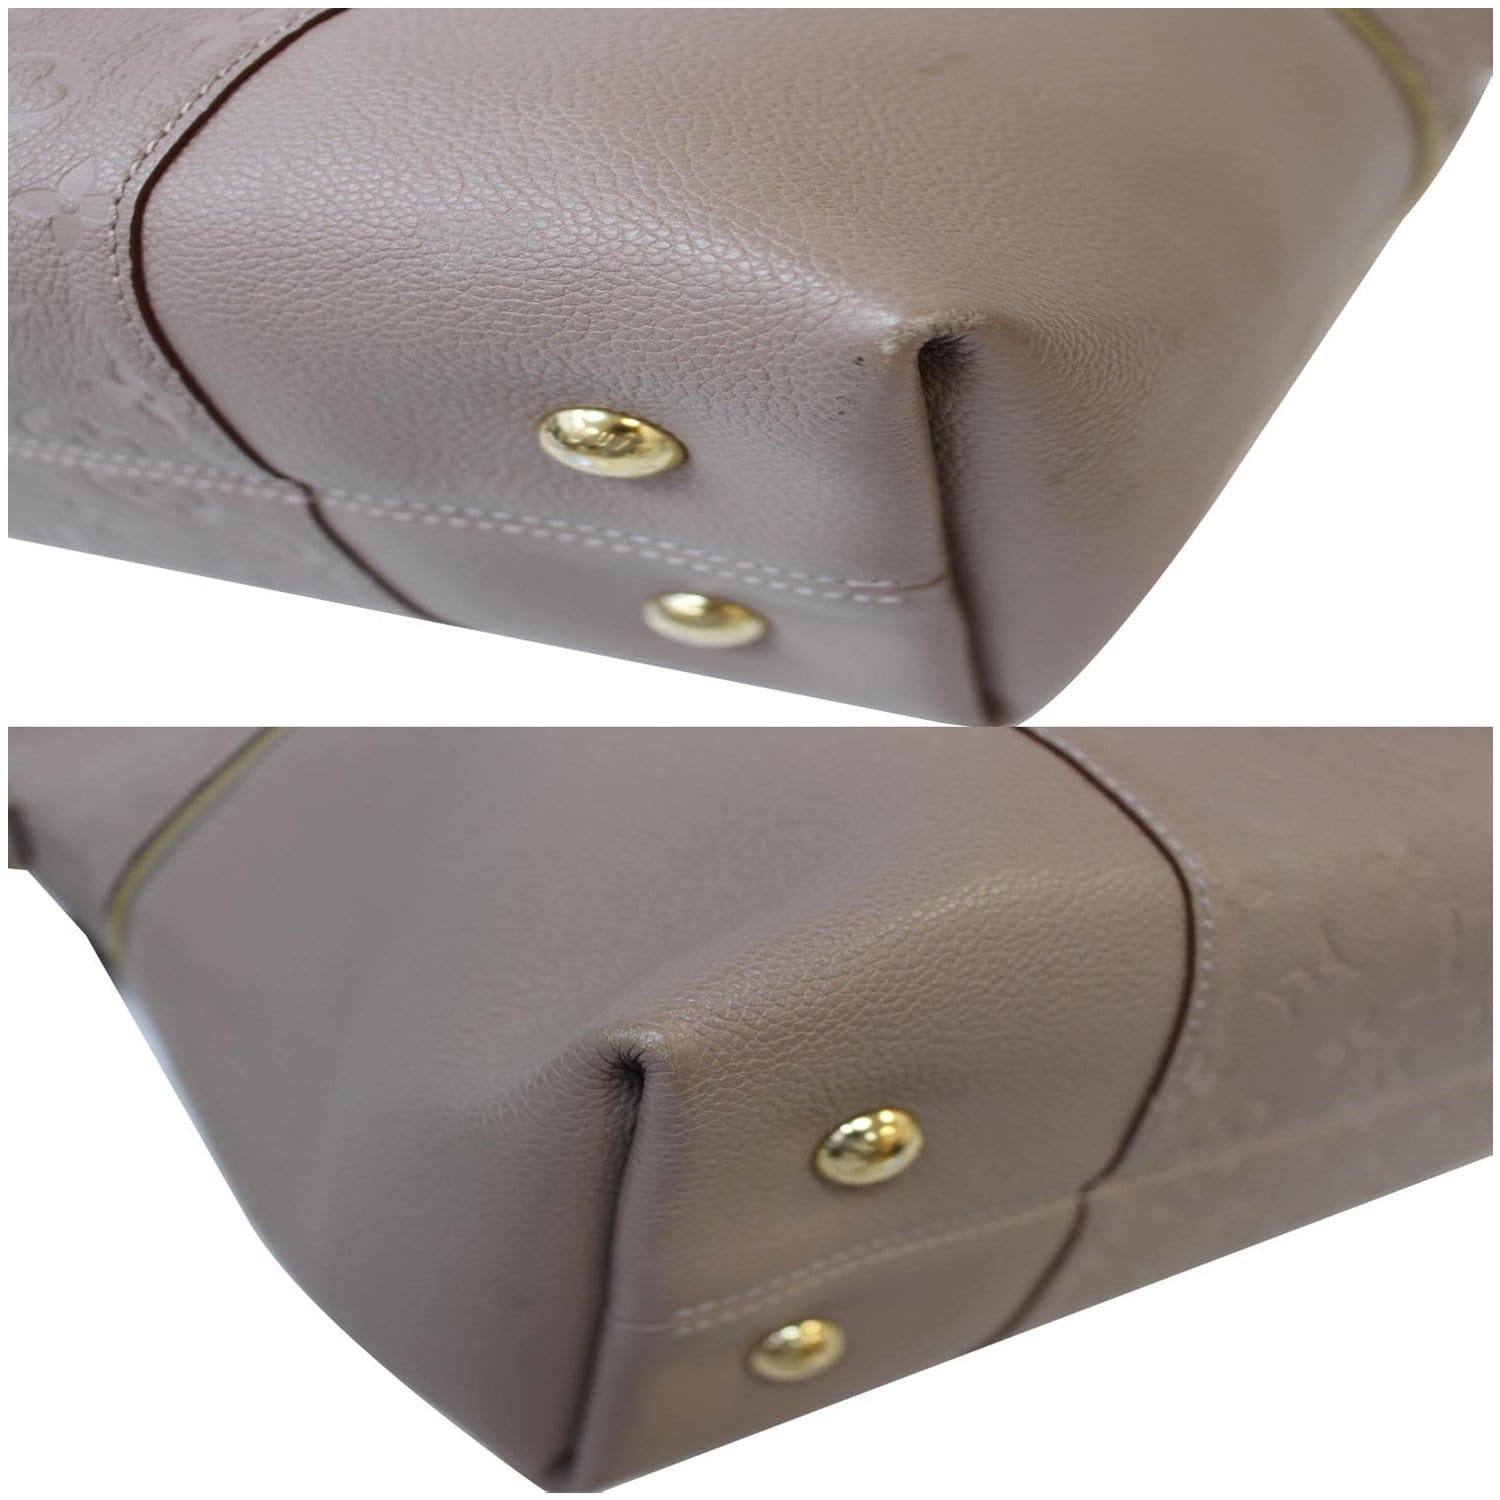 Louis Vuitton Melie Handbag Monogram Empreinte Leather Noir (M44014)